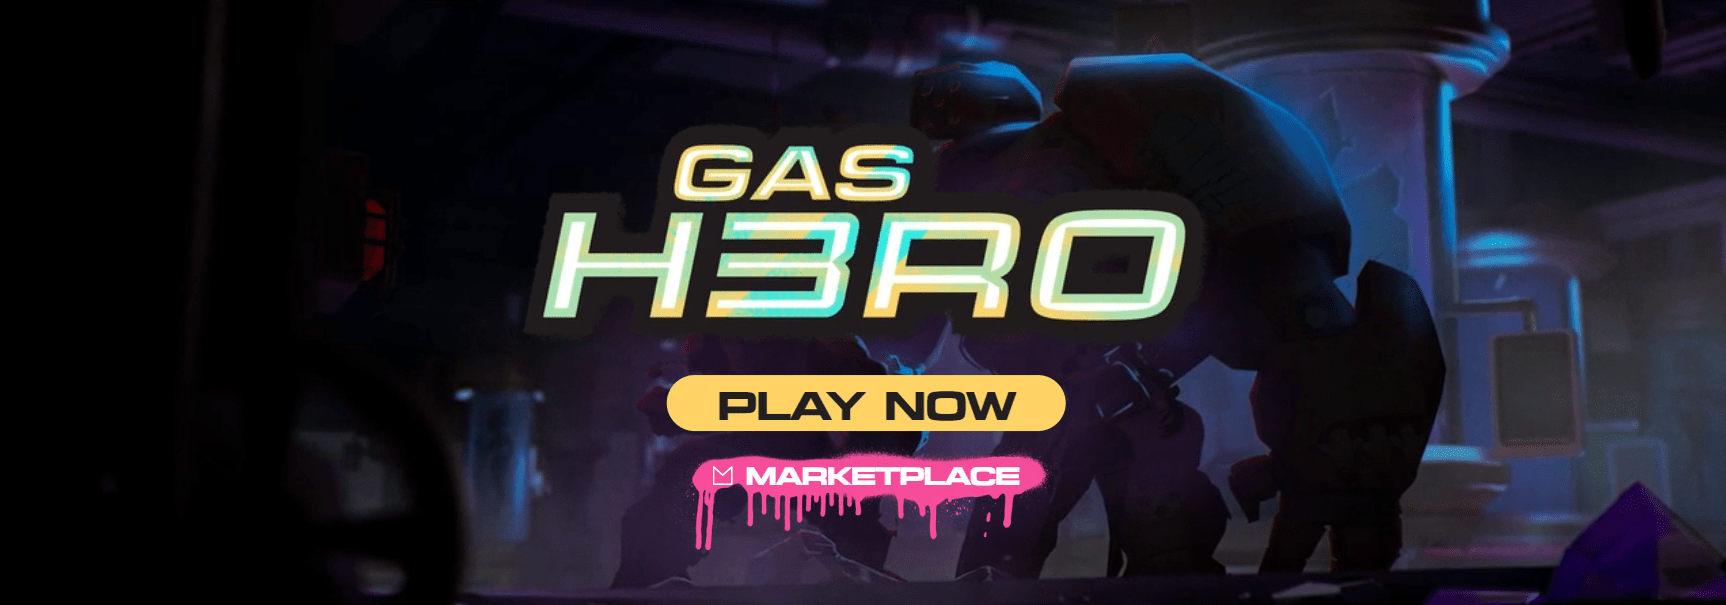 Gas Hero là gì?